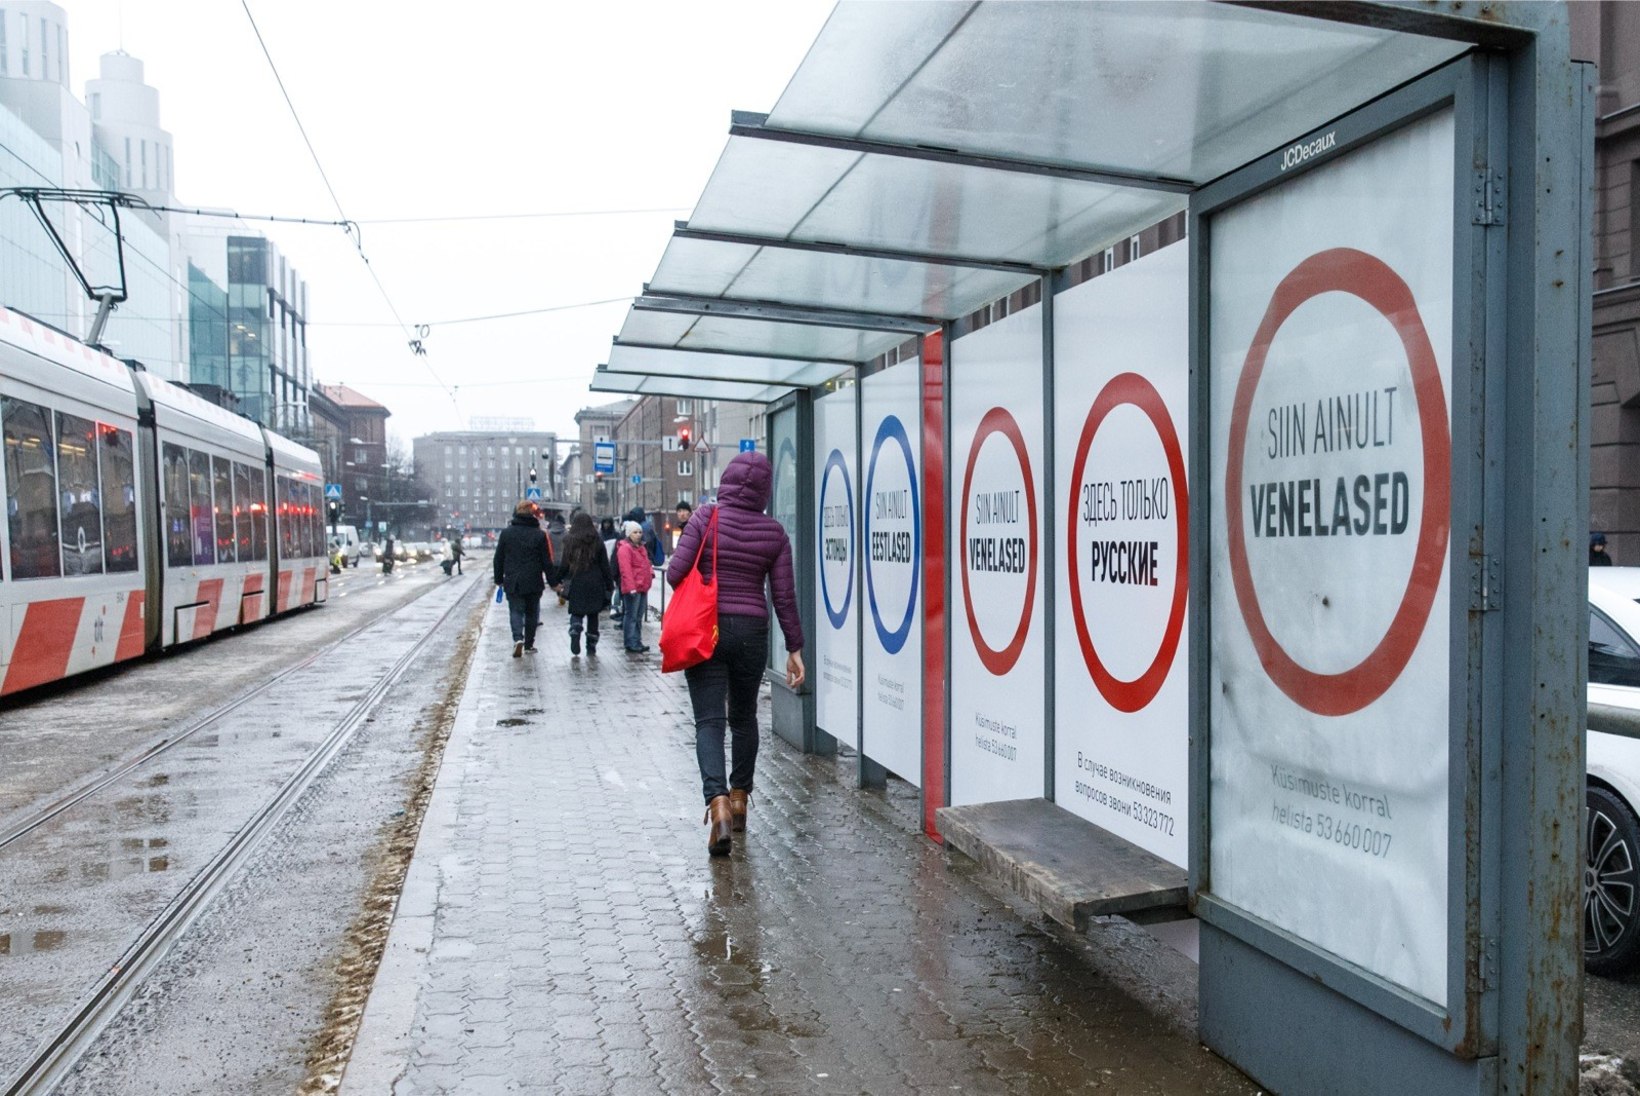 FOTOD | Tallinna kesklinna püstitati plakatid, mis kutsuvad eestlasi ja venelasi üksteisest eraldi seisma